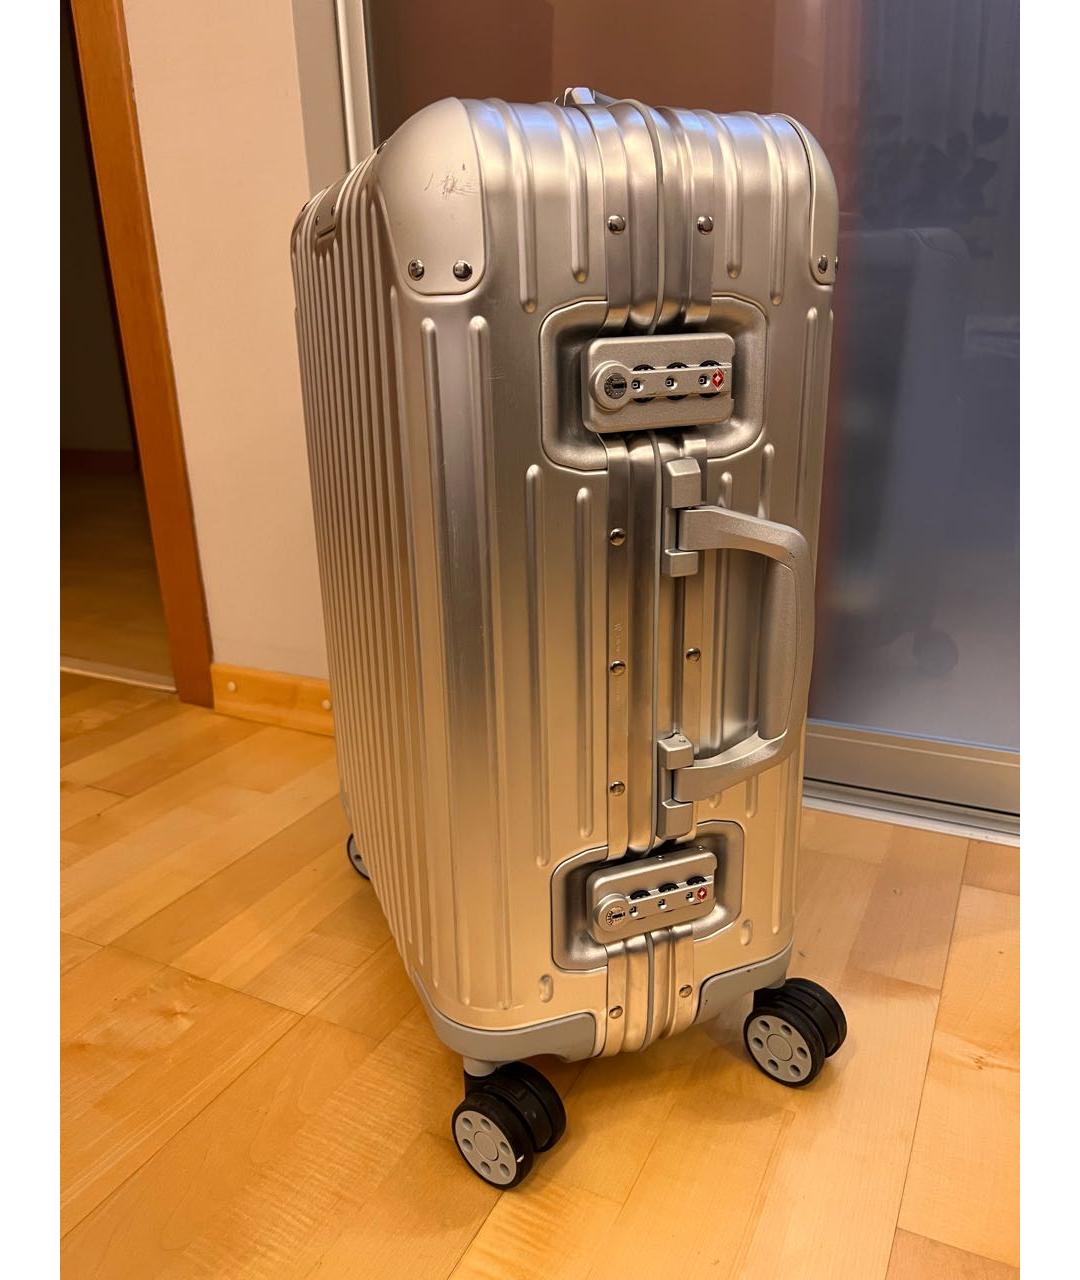 Rimowa Серебрянный чемодан, фото 3